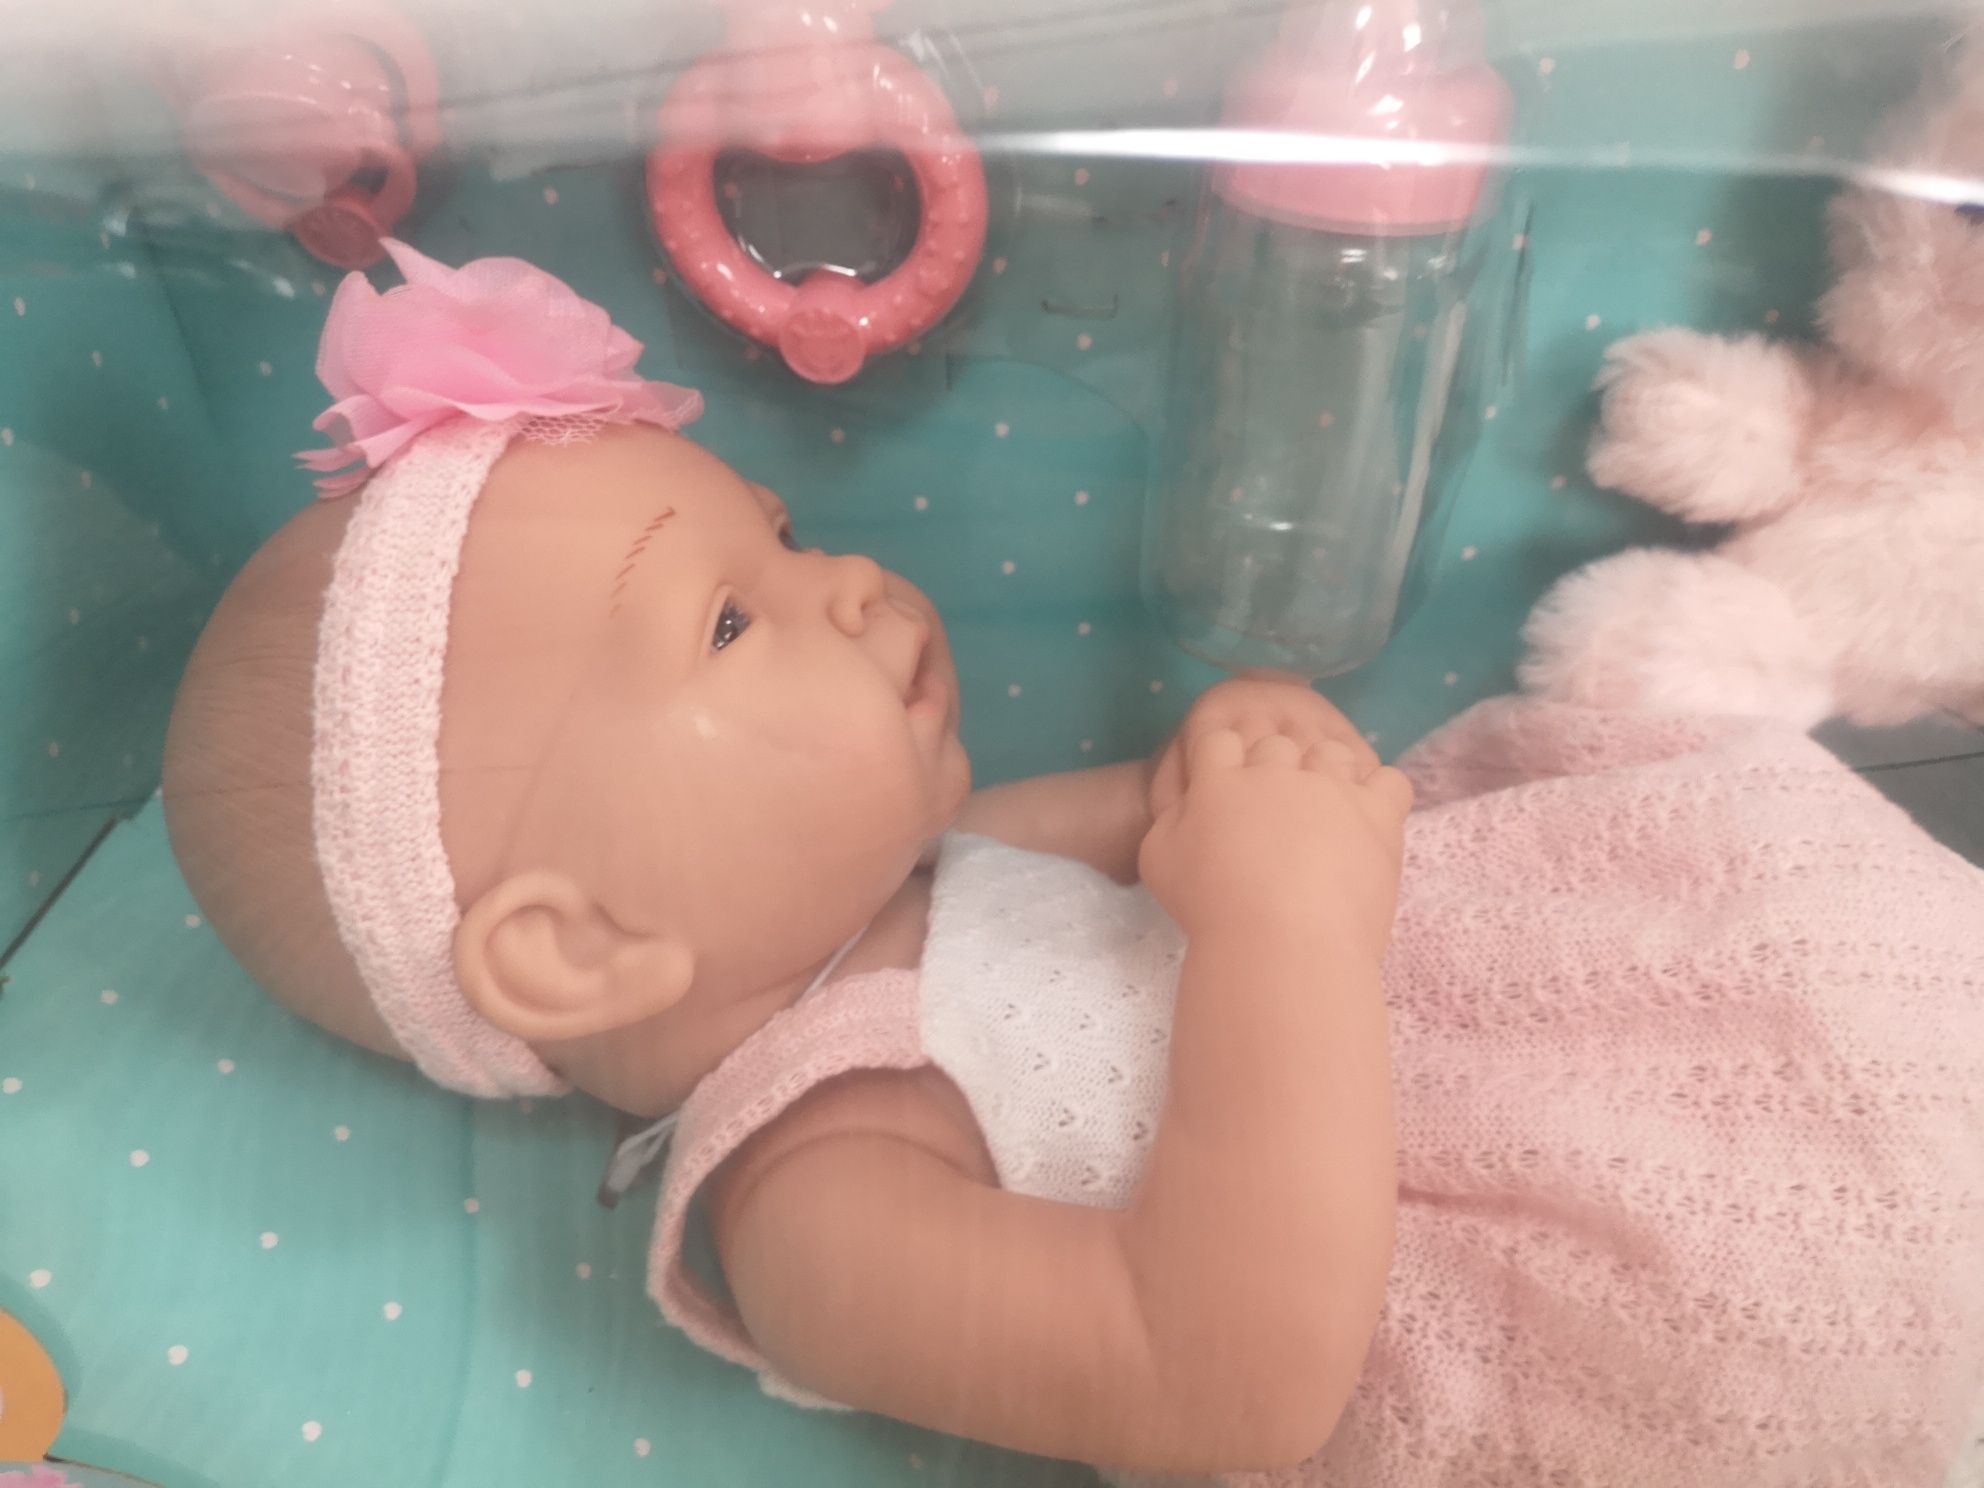 Игровой набор кукла Малышка Джанет